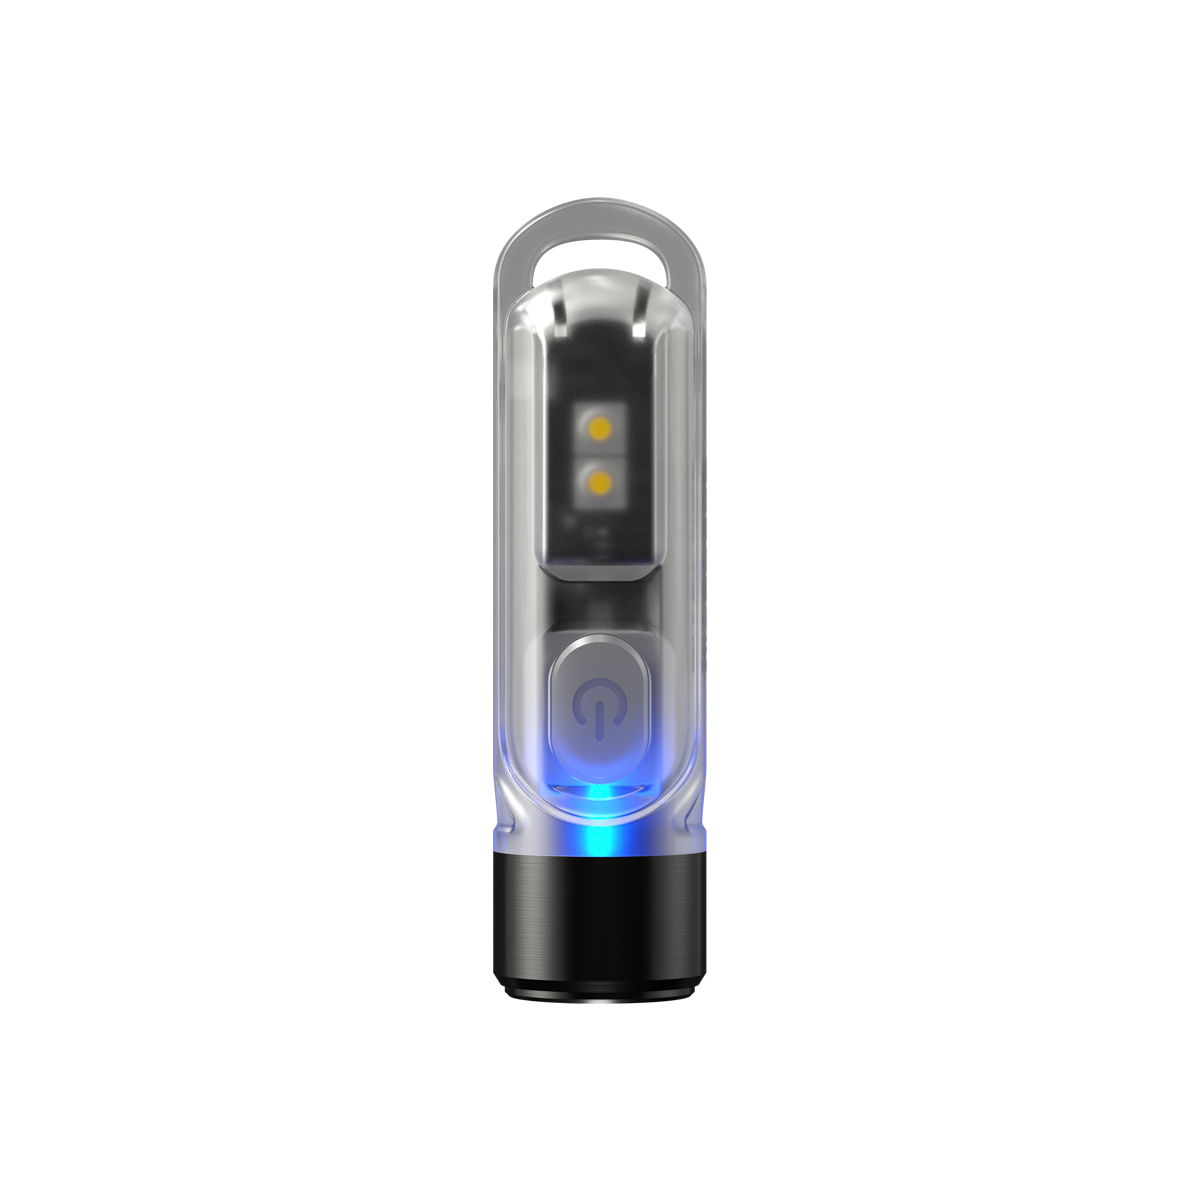 Mini lampe torche led UV Nitecore TIKI UV Keychain Light